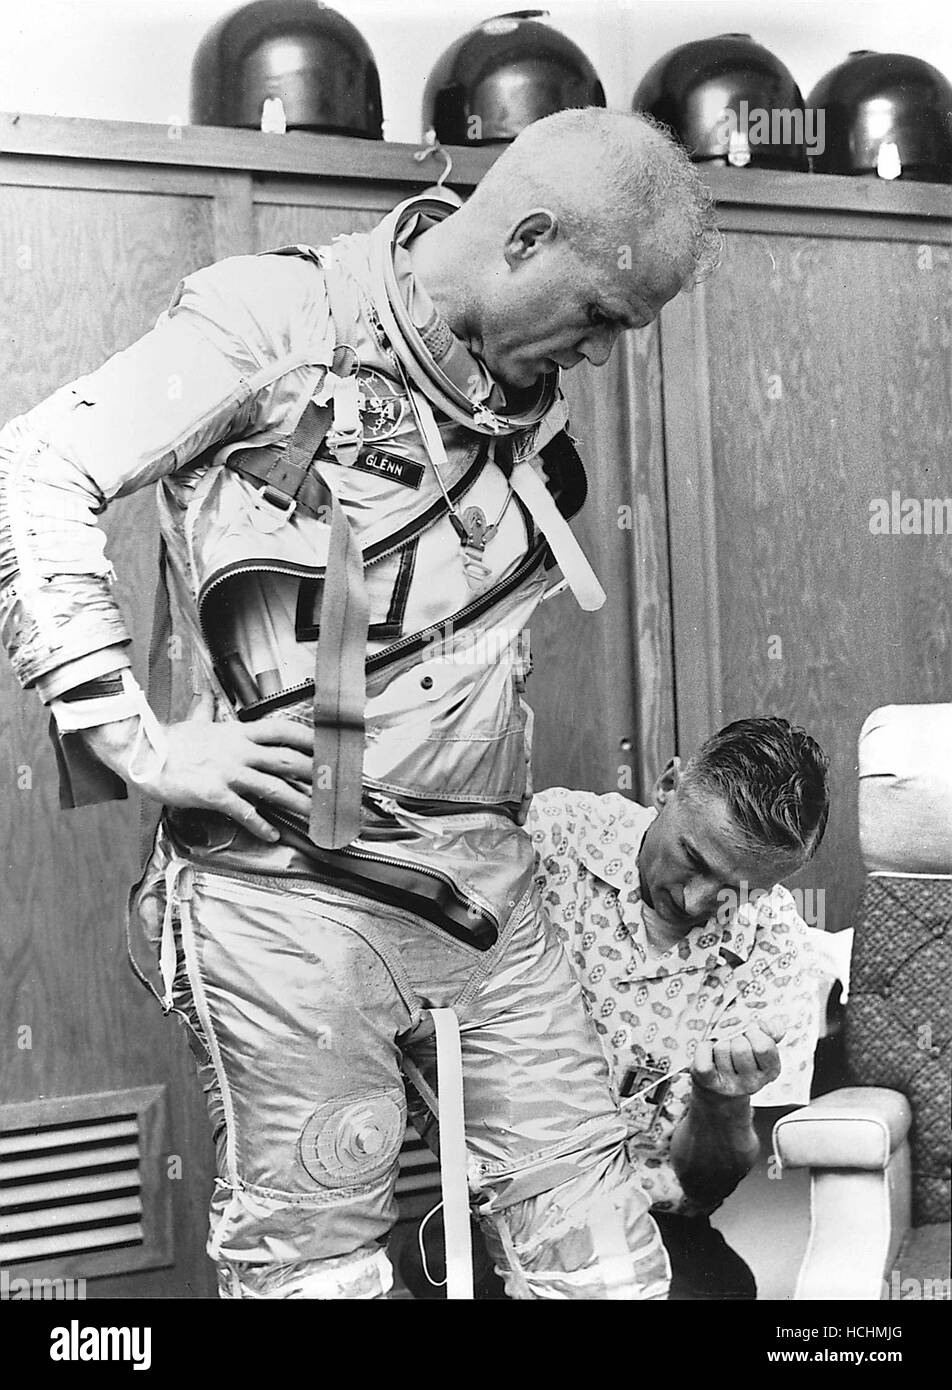 Washington, DC - 19. April 1998--Astronaut John H. Glenn, Jr. wird von Joe W. Schmitt unterstützt, wie er passt sich in der Praxis für die Perparation der Mission Mercury-Atlas 6 (MA-6) in das Bild, das in Cape Canaveral, Florida am 5. Februar 1962.Credit: NASA/CNP /MediaPunch Stockfoto